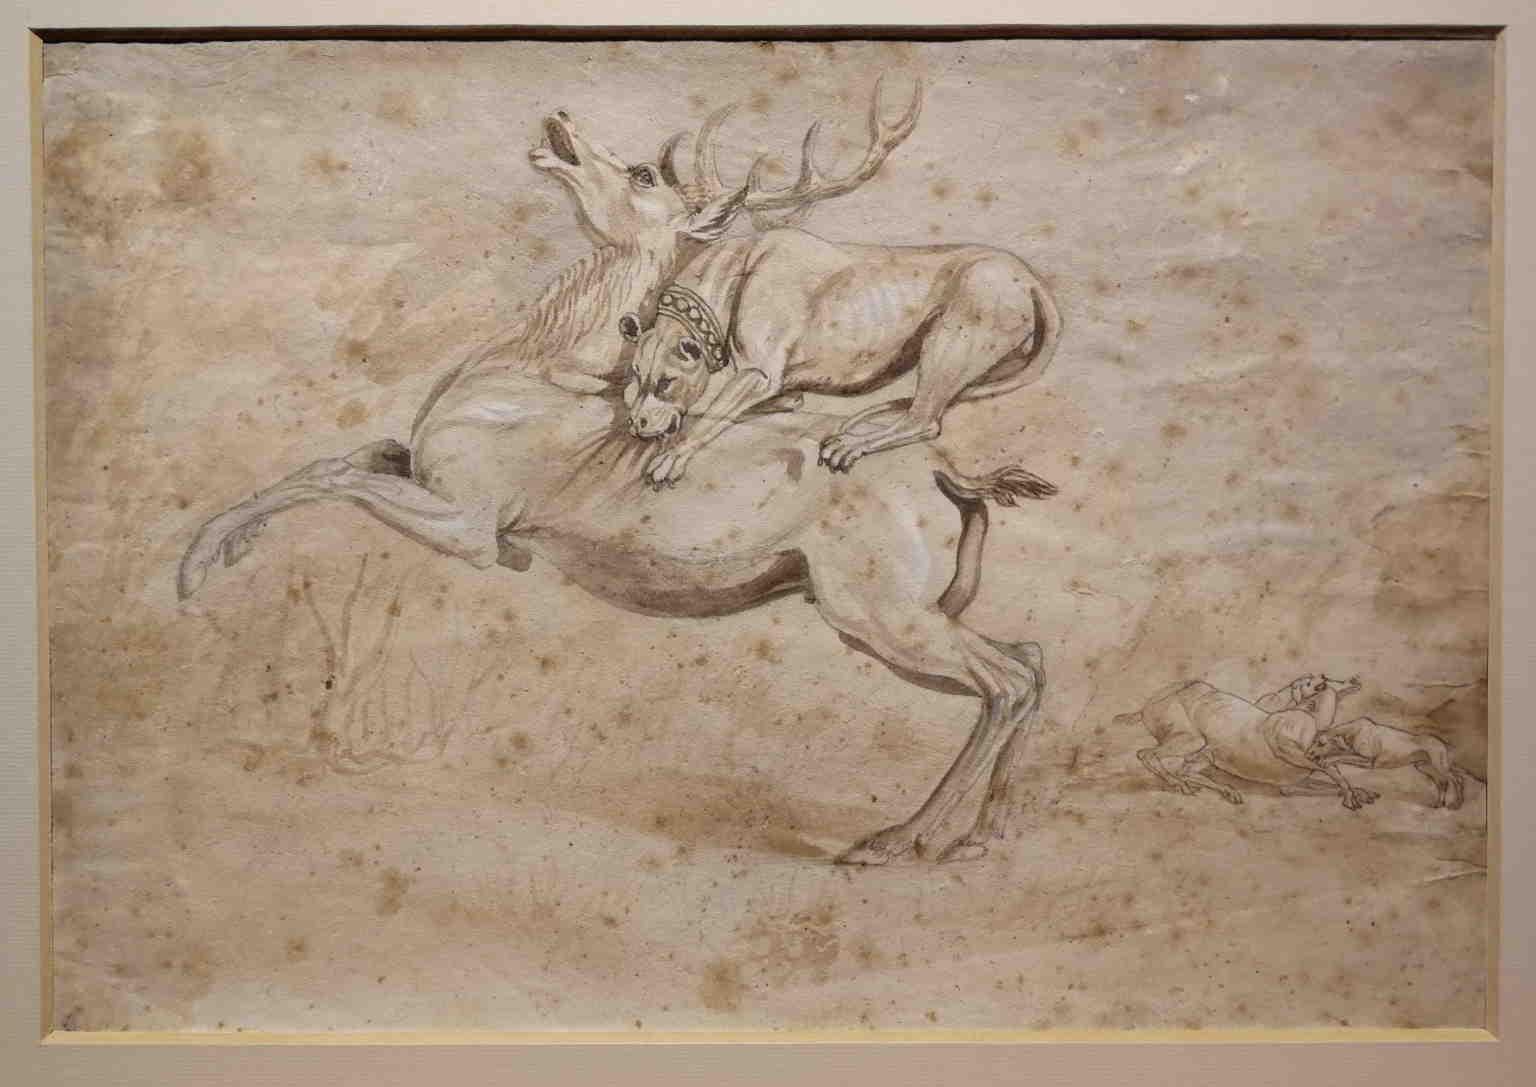 Il disegno, 30 x 41 cm acquarello su carta, raffigura una scena di caccia. Il centro del foglio è dominato dall'assalto di un cane molosso con il collare ad un cervo, mentre sullo sfondo a destra due cani si contendono un'altro cervo.
Rientra